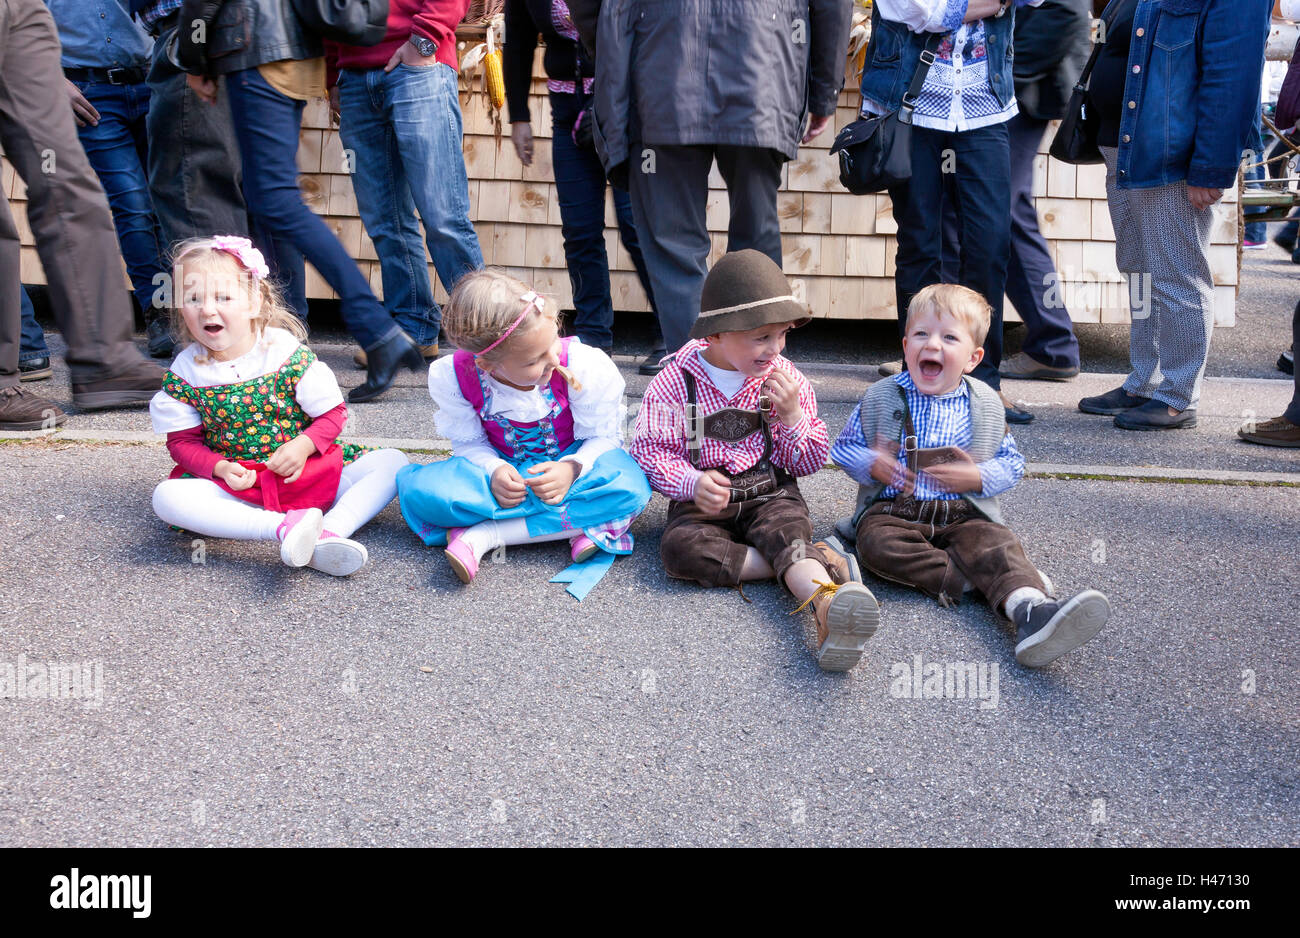 Quatre petits enfants lors de célébration et parade de costumes traditionnels, Sasbachwalden, Forêt-Noire, Bade-Wurtemberg, Allemagne Banque D'Images